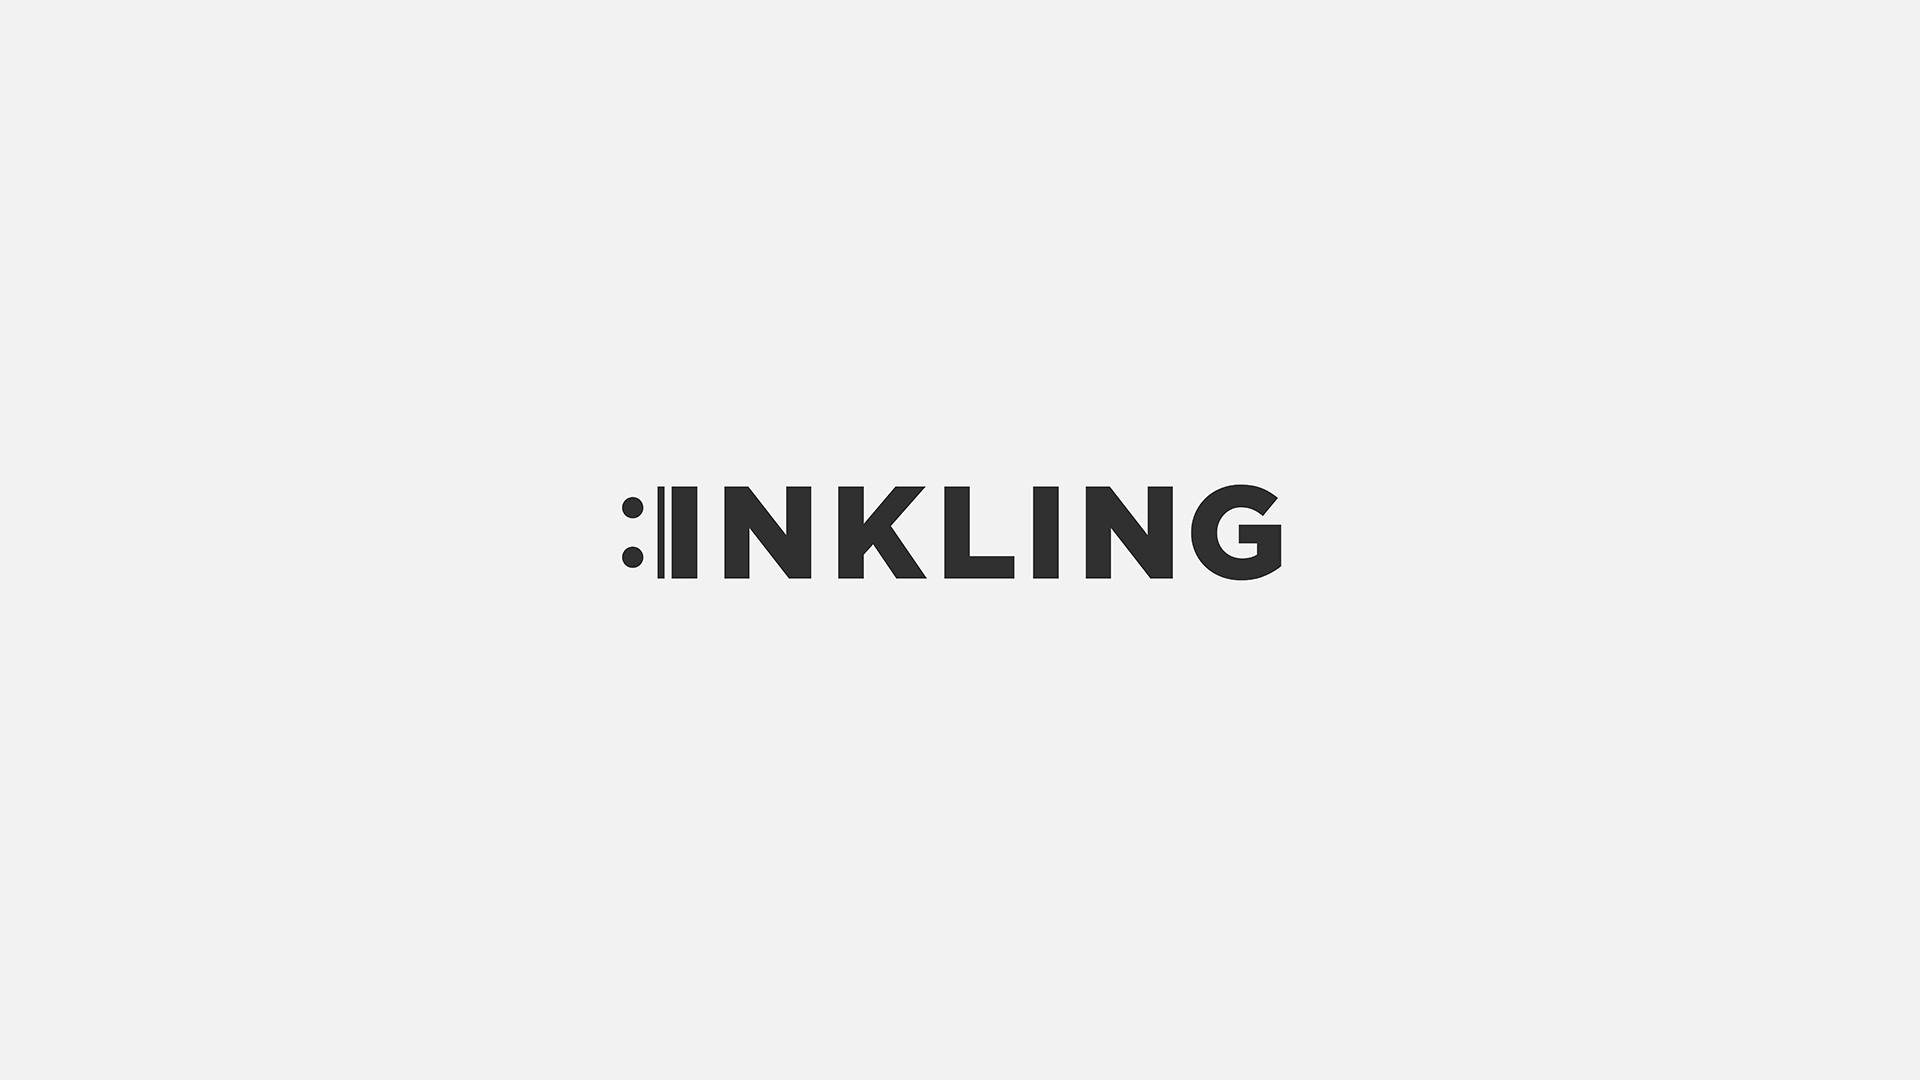 inkling logo